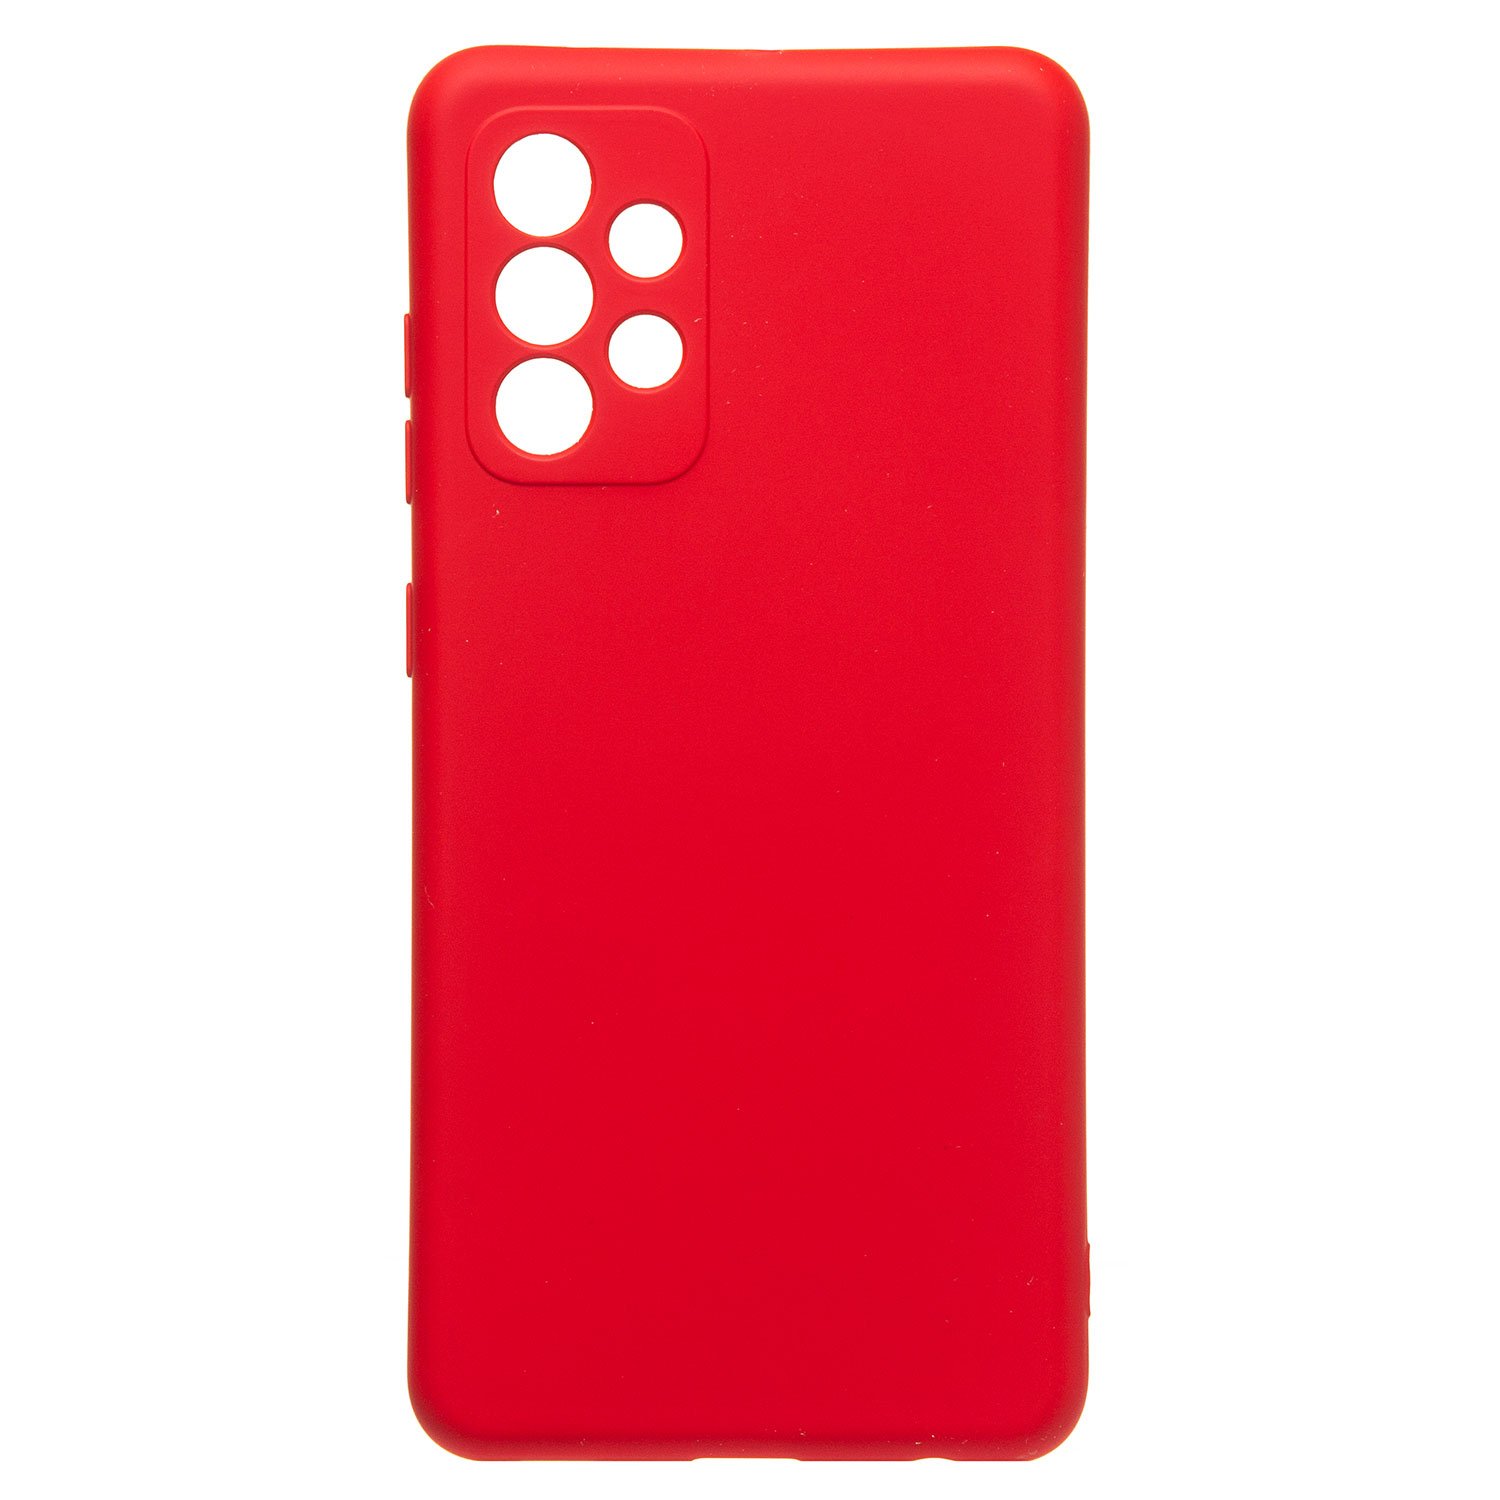 Чехол-накладка Activ Full Original Design для смартфона Samsung Galaxy A52s, силикон, красный (133631)